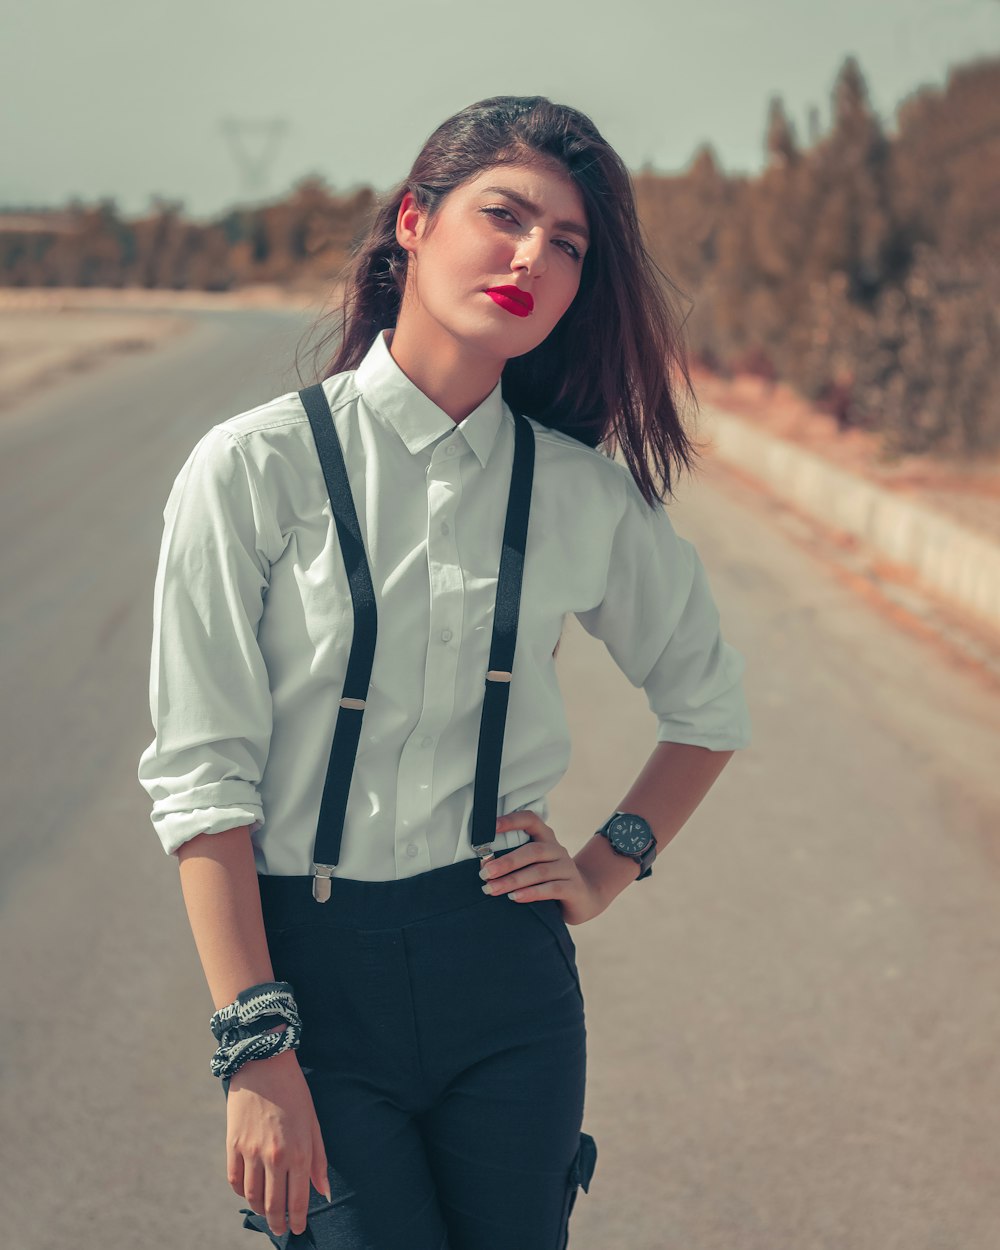 흰색 버튼 업 셔츠와 검은 바지를 입은 여자가 낮 동안 도로에 서 있다